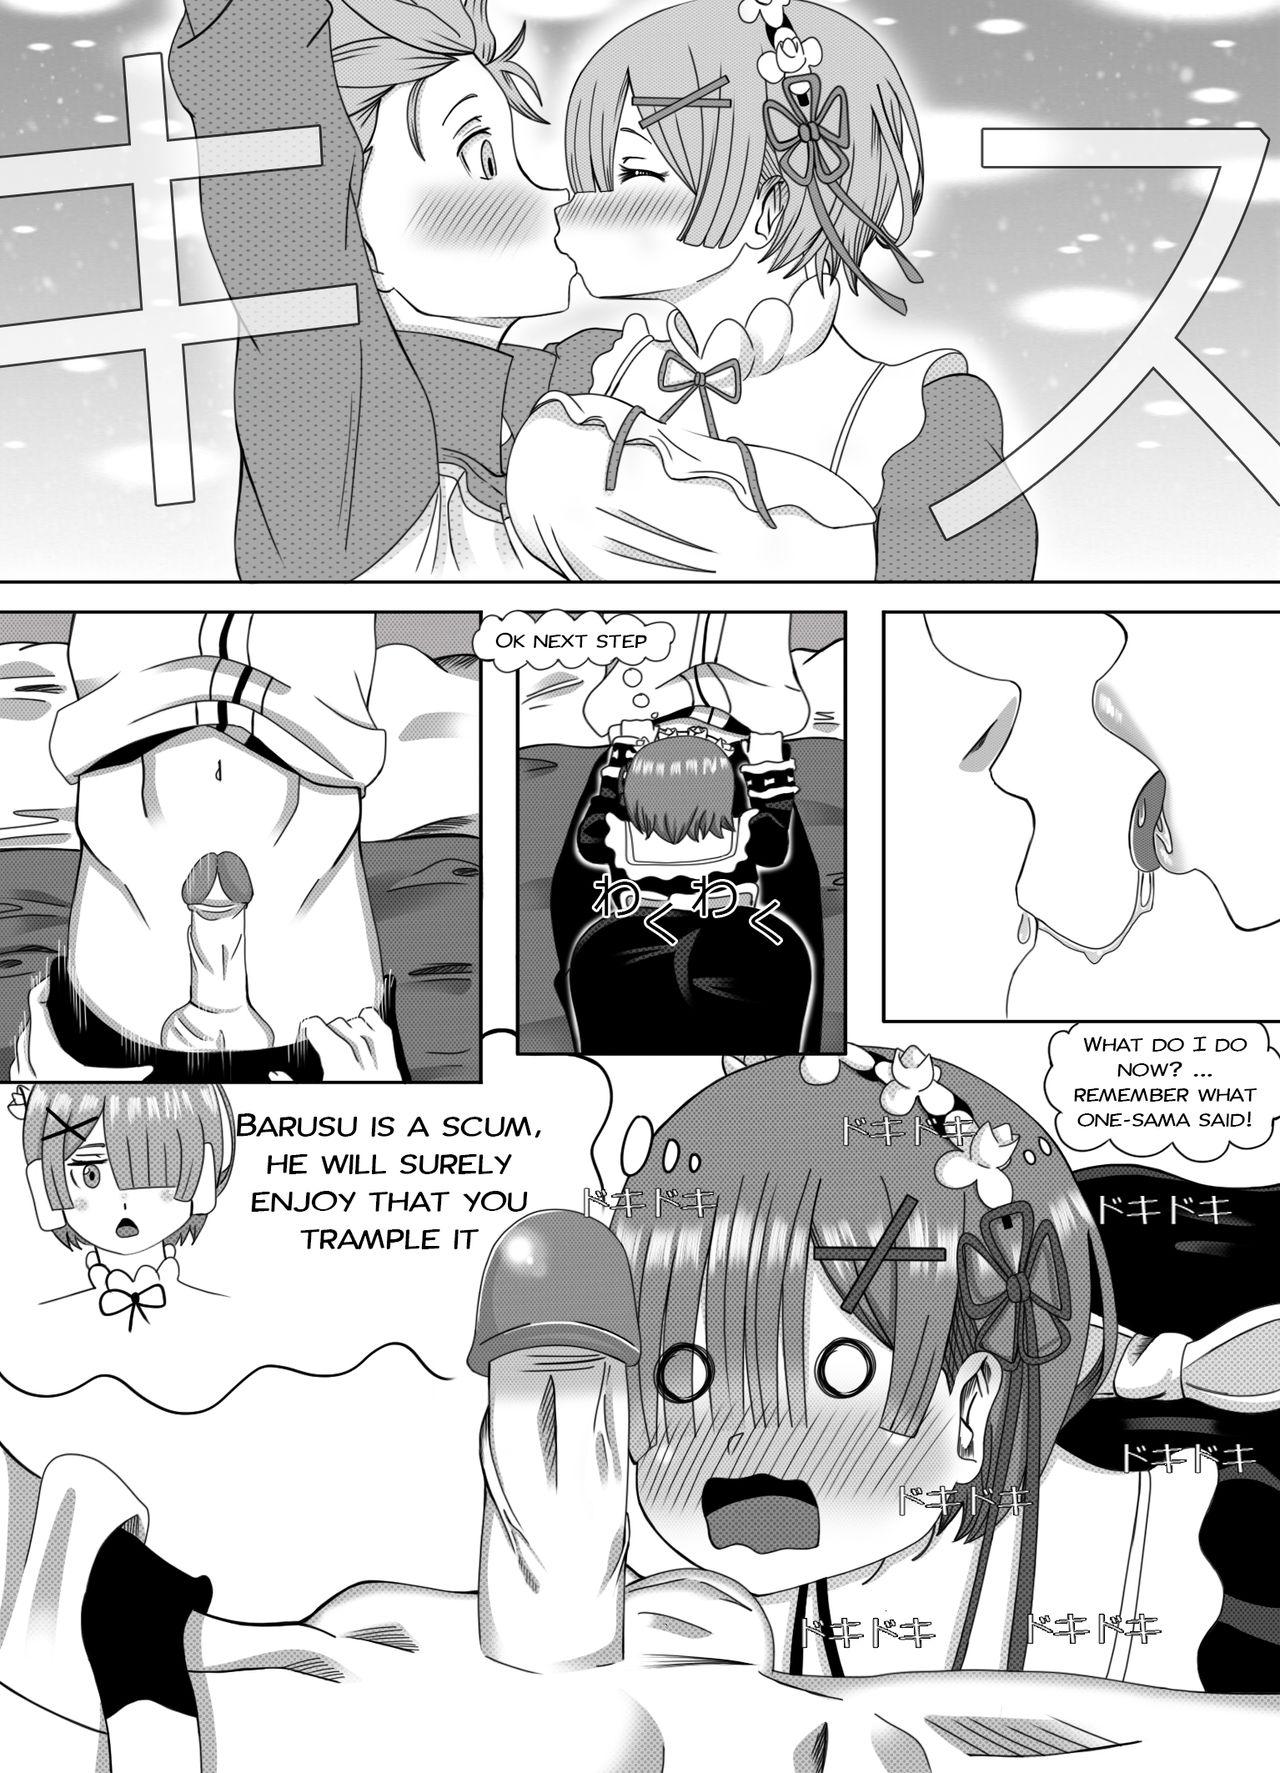 Oldyoung Re Zero Memory Snow After - Re zero kara hajimeru isekai seikatsu Camshow - Page 7